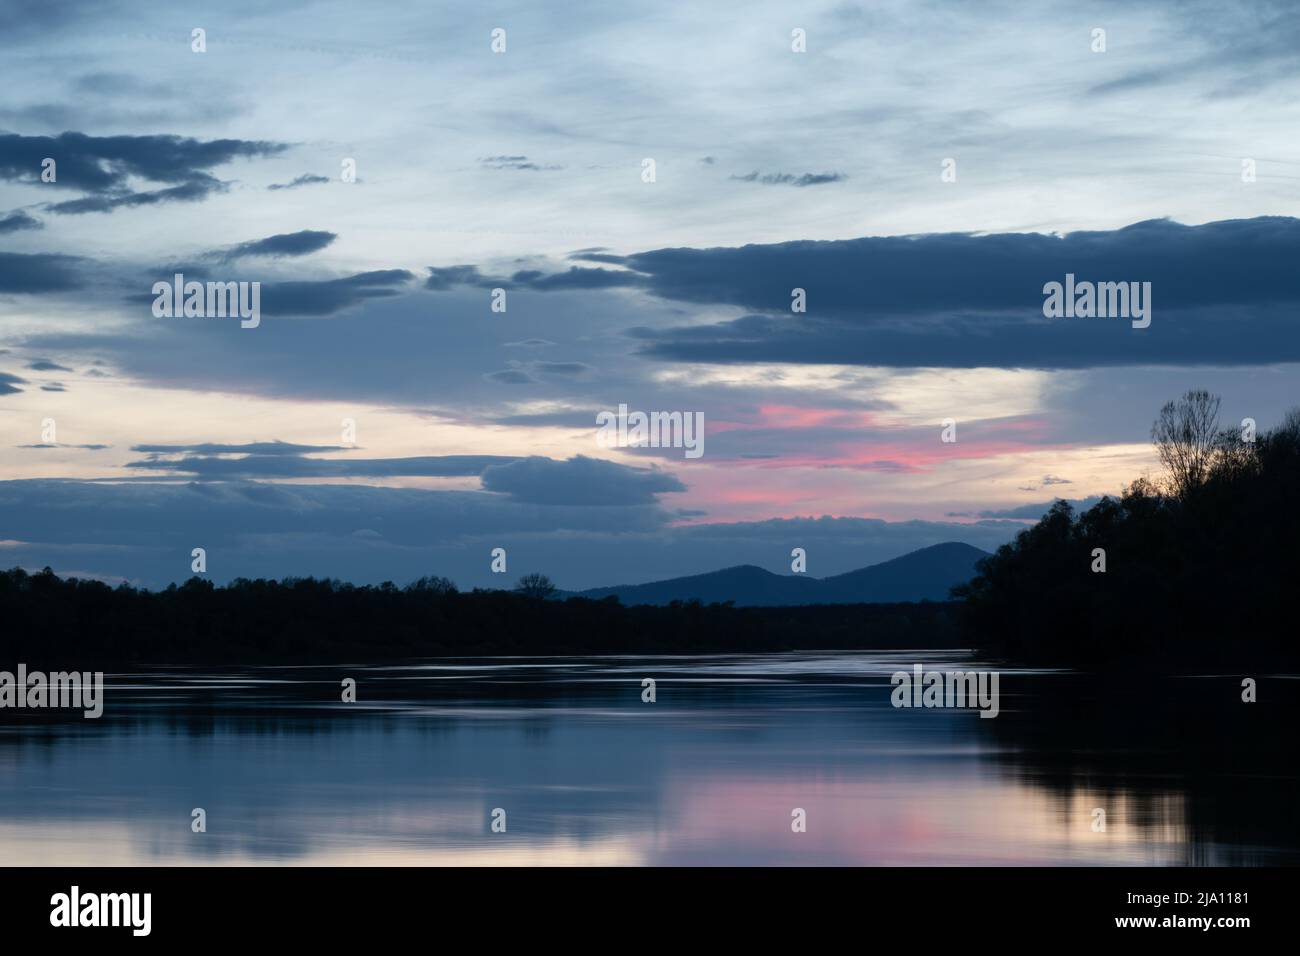 Paesaggio di fiume e silhouette di montagna al crepuscolo, fiume Sava con riva boscosa e montagna Motajica con le nuvole nel cielo durante l'ora blu e porpora Foto Stock